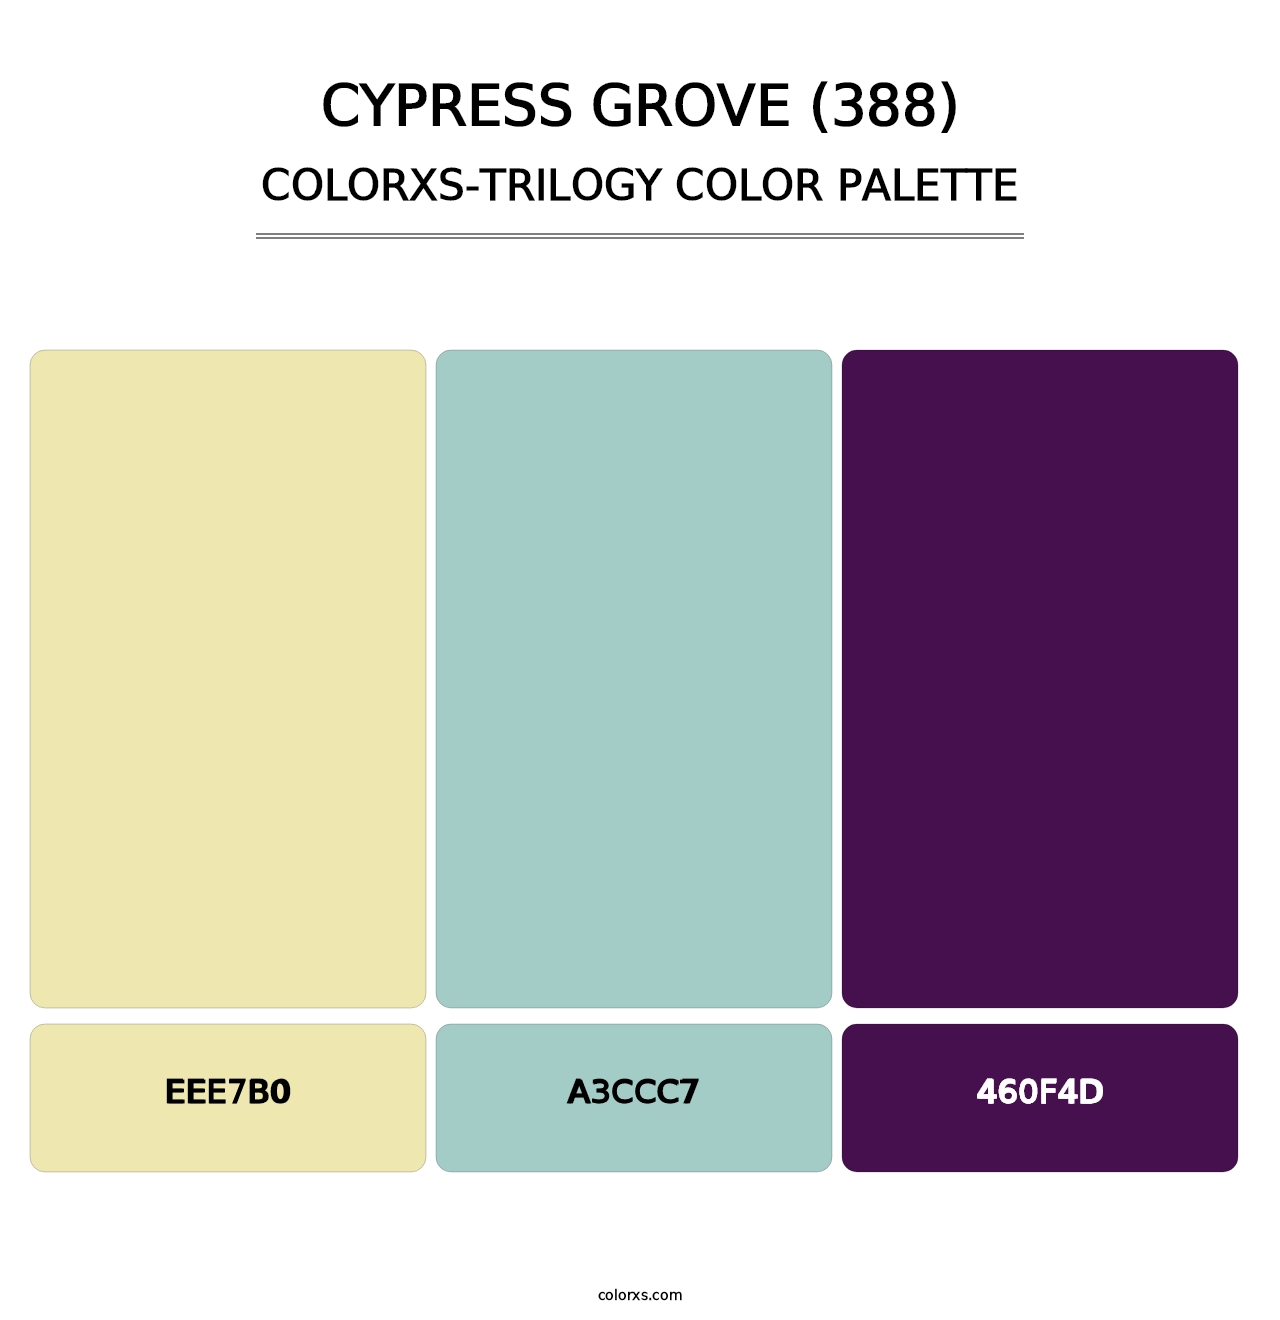 Cypress Grove (388) - Colorxs Trilogy Palette